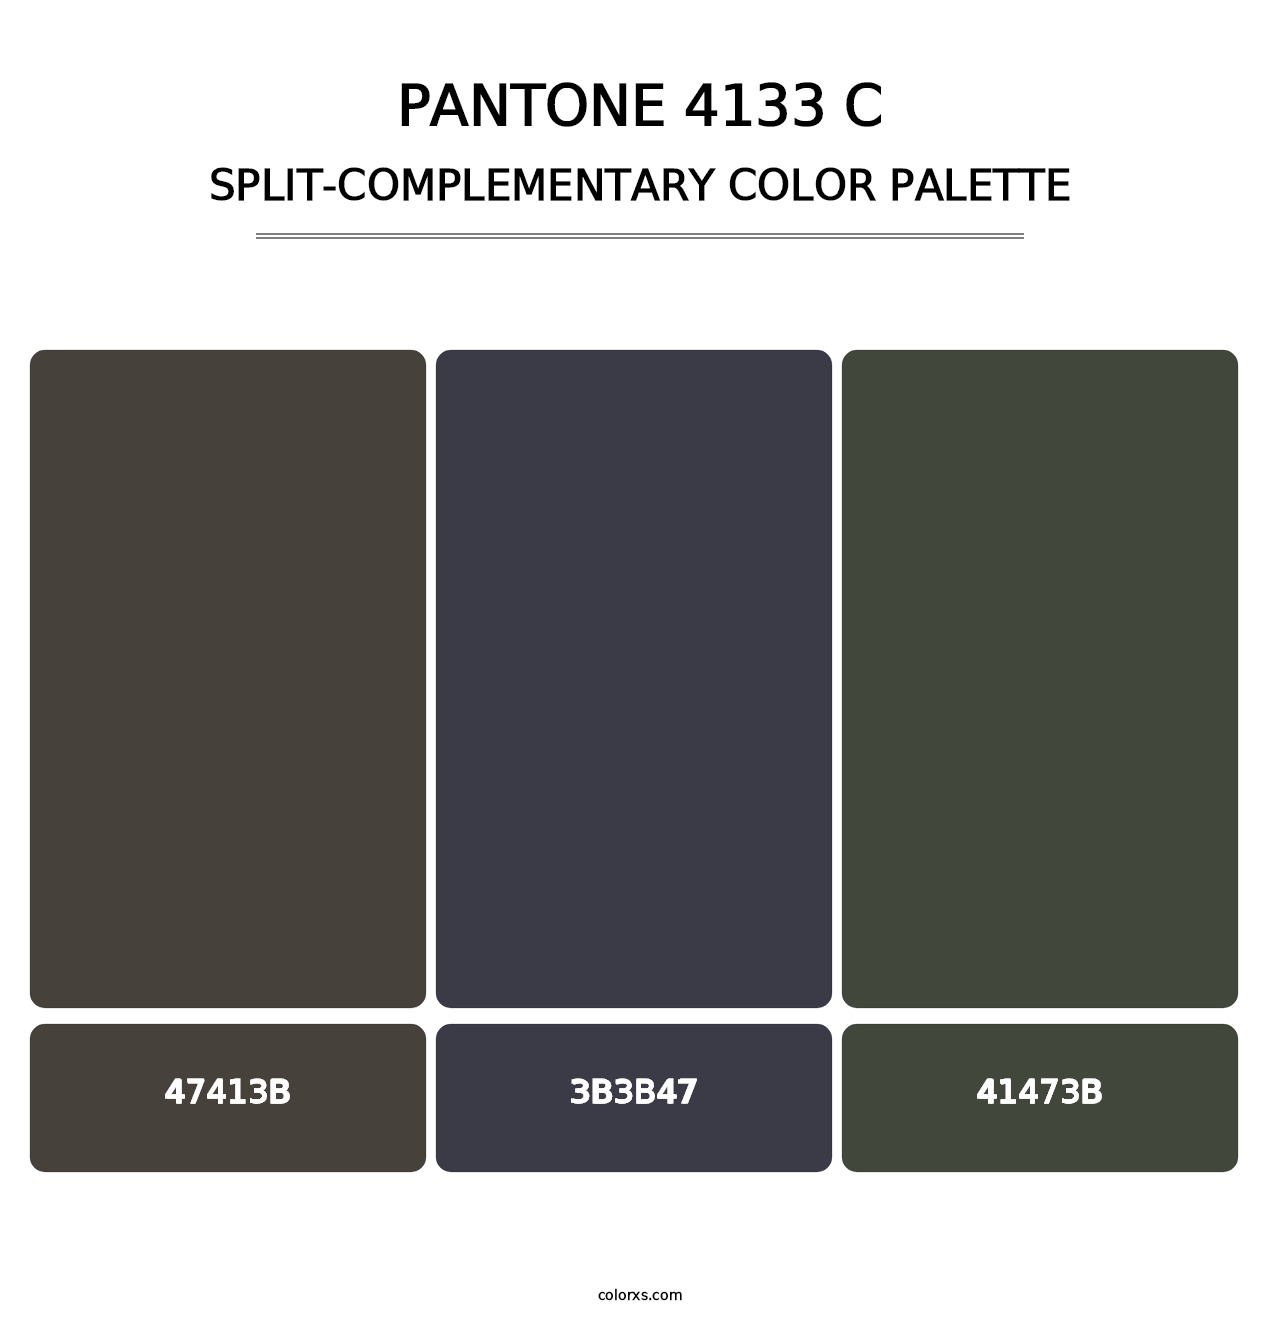 PANTONE 4133 C - Split-Complementary Color Palette